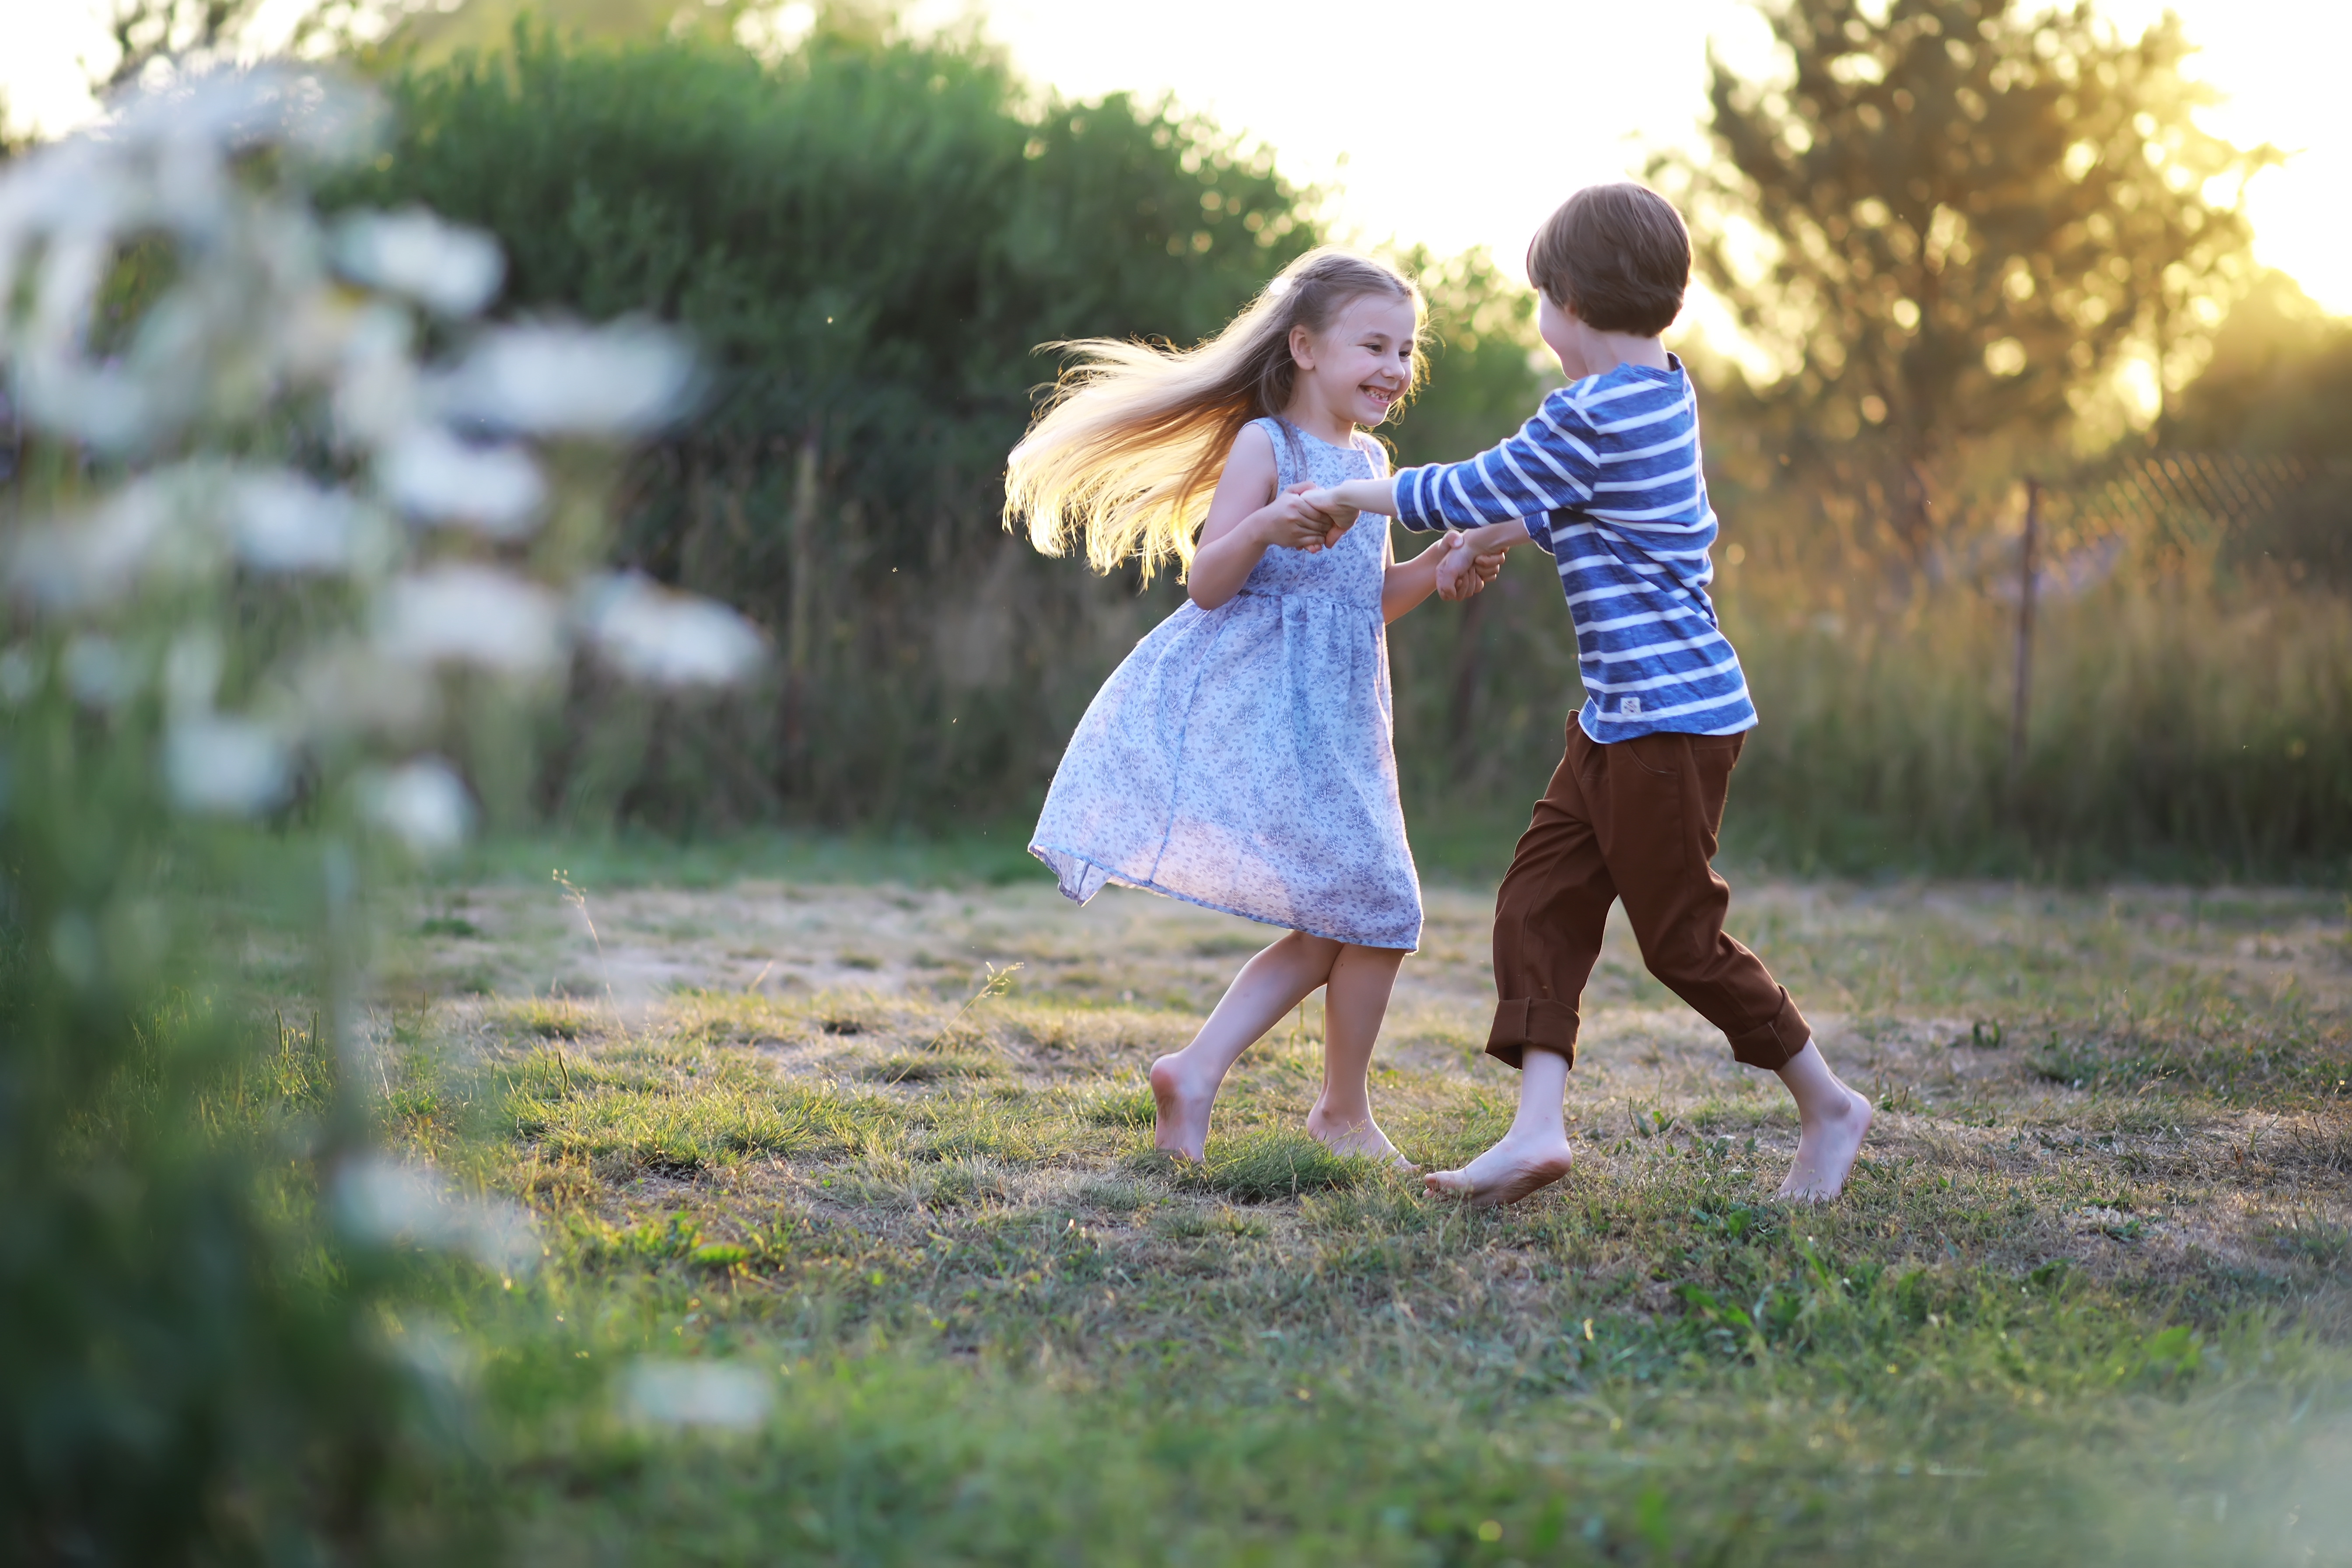 Un jeune garçon est photographié en train de jouer avec une jeune fille dans le parc | Source : Shutterstock